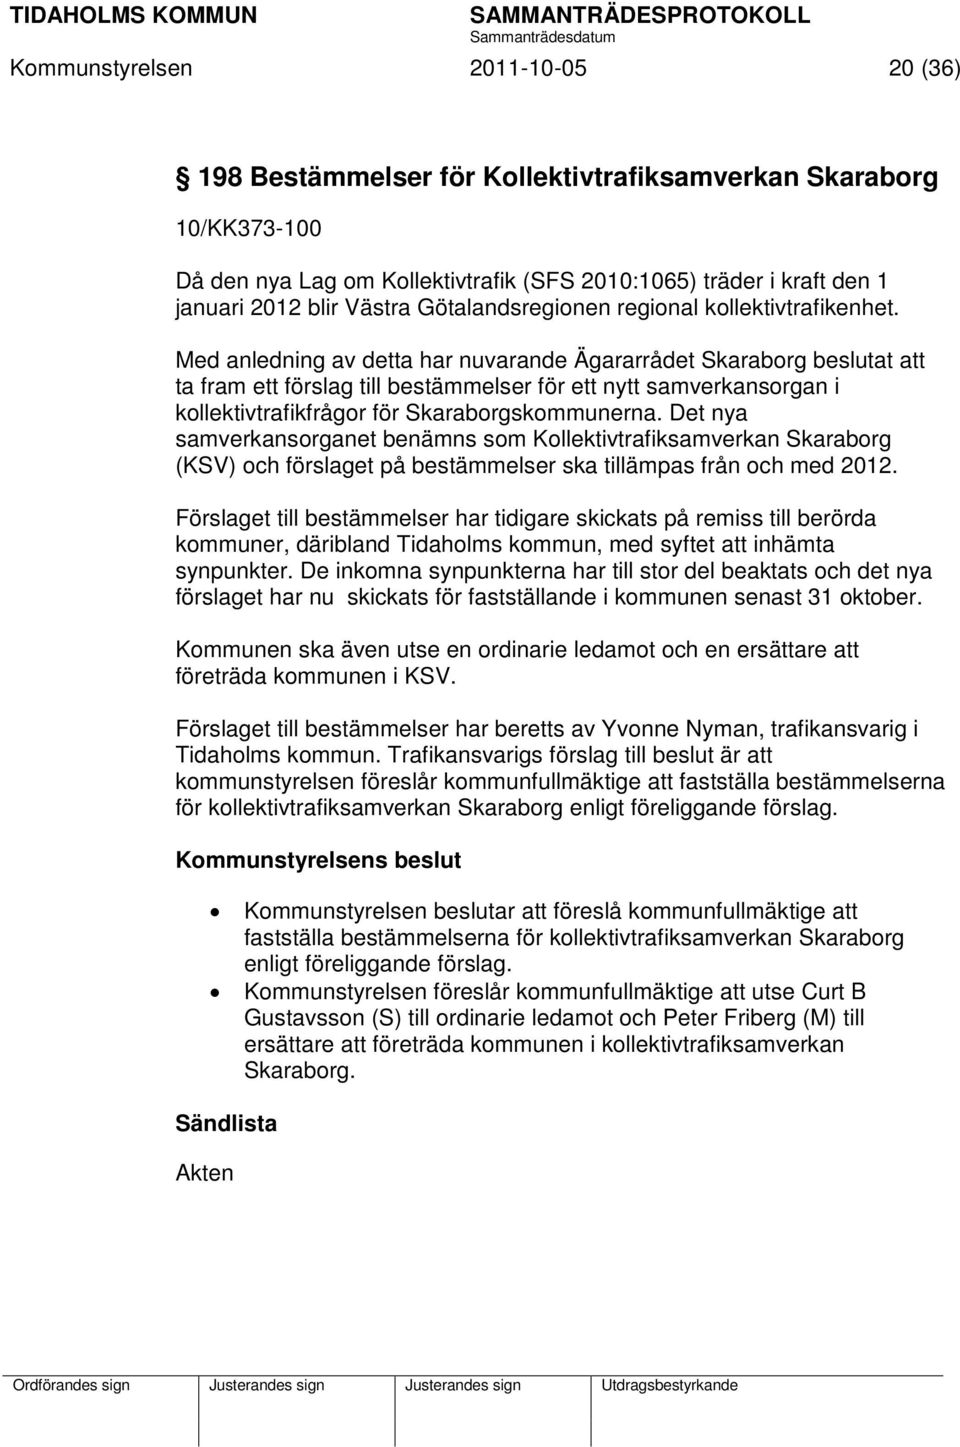 Med anledning av detta har nuvarande Ägararrådet Skaraborg beslutat att ta fram ett förslag till bestämmelser för ett nytt samverkansorgan i kollektivtrafikfrågor för Skaraborgskommunerna.